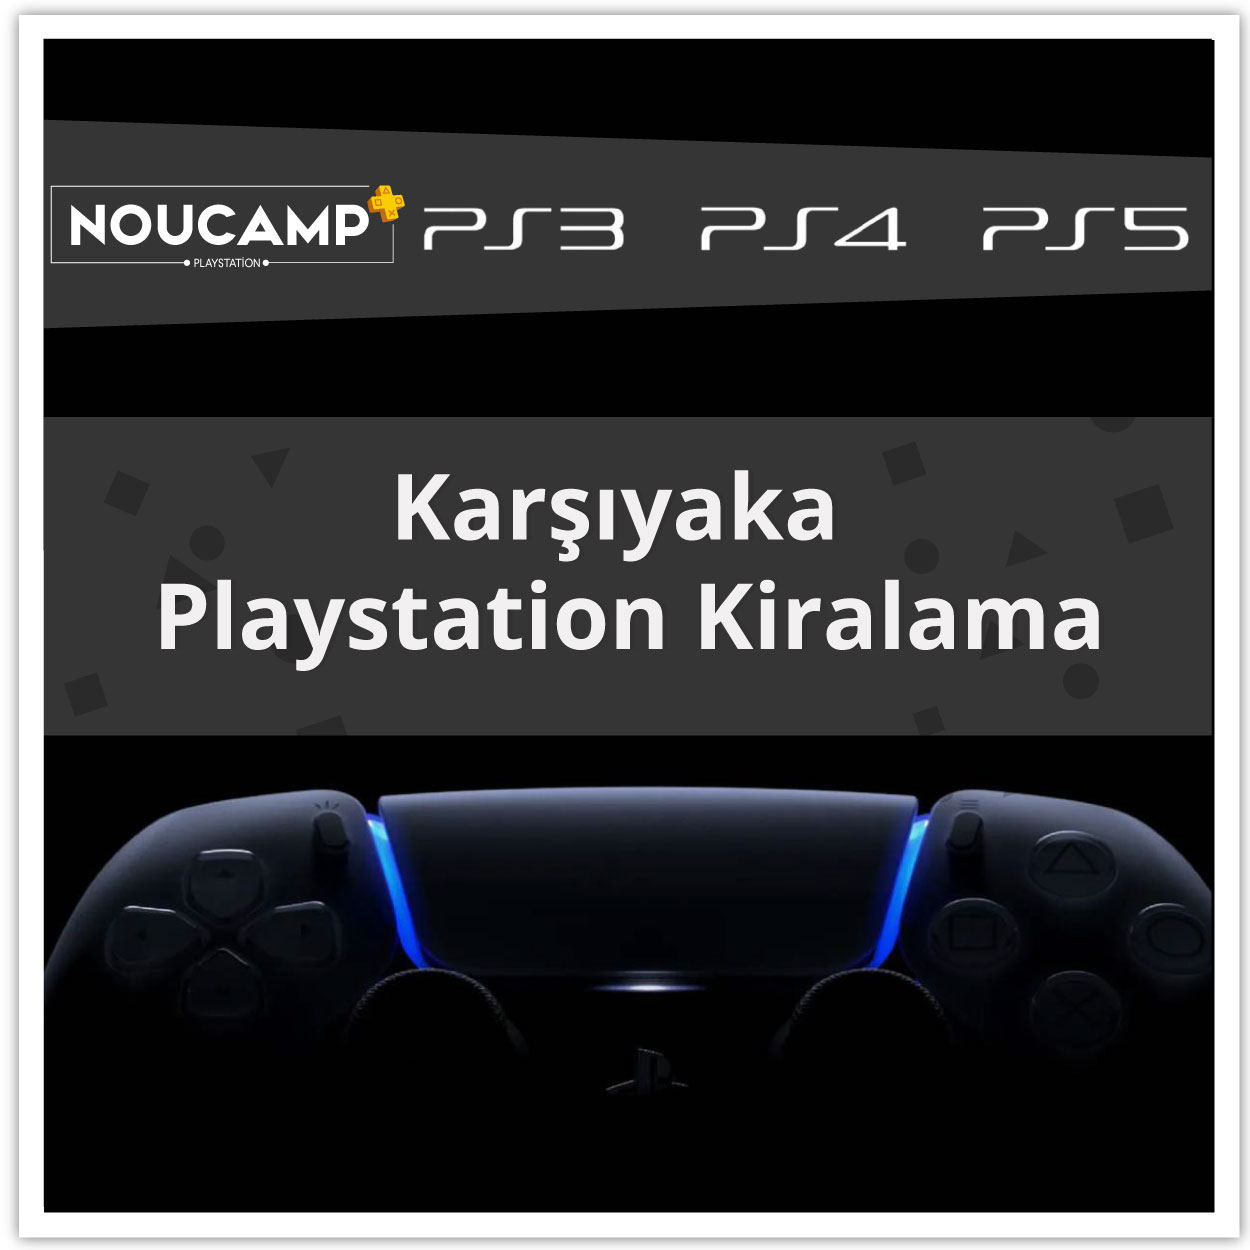 karsiyaka-playstation-kiralama